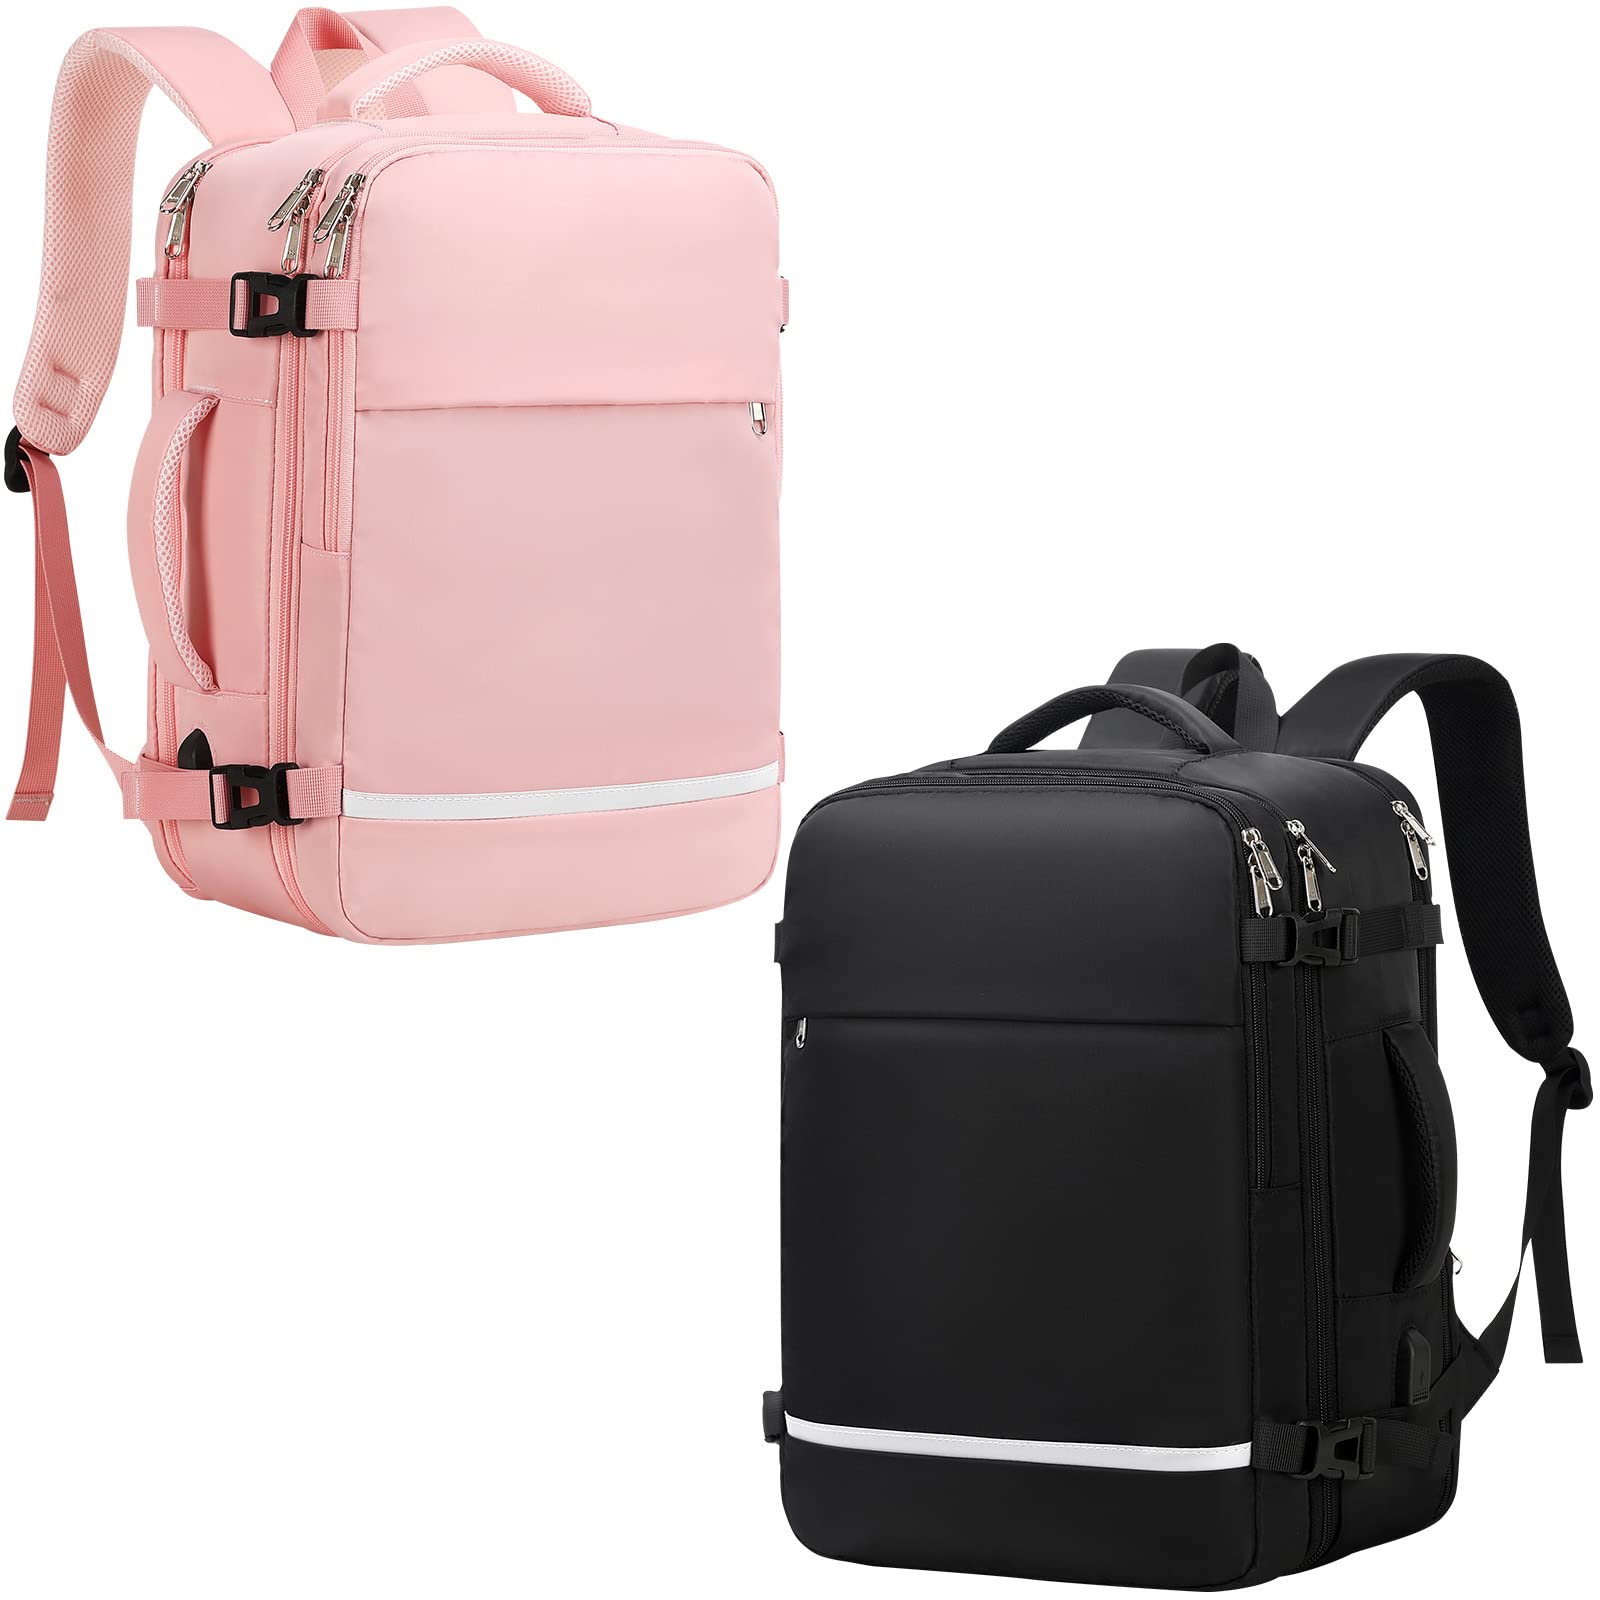 送料無料XJ-HOME Travel Laptop Backpack for Men and Women on Airplane College Bag Casual Daypack for Weekender Business H